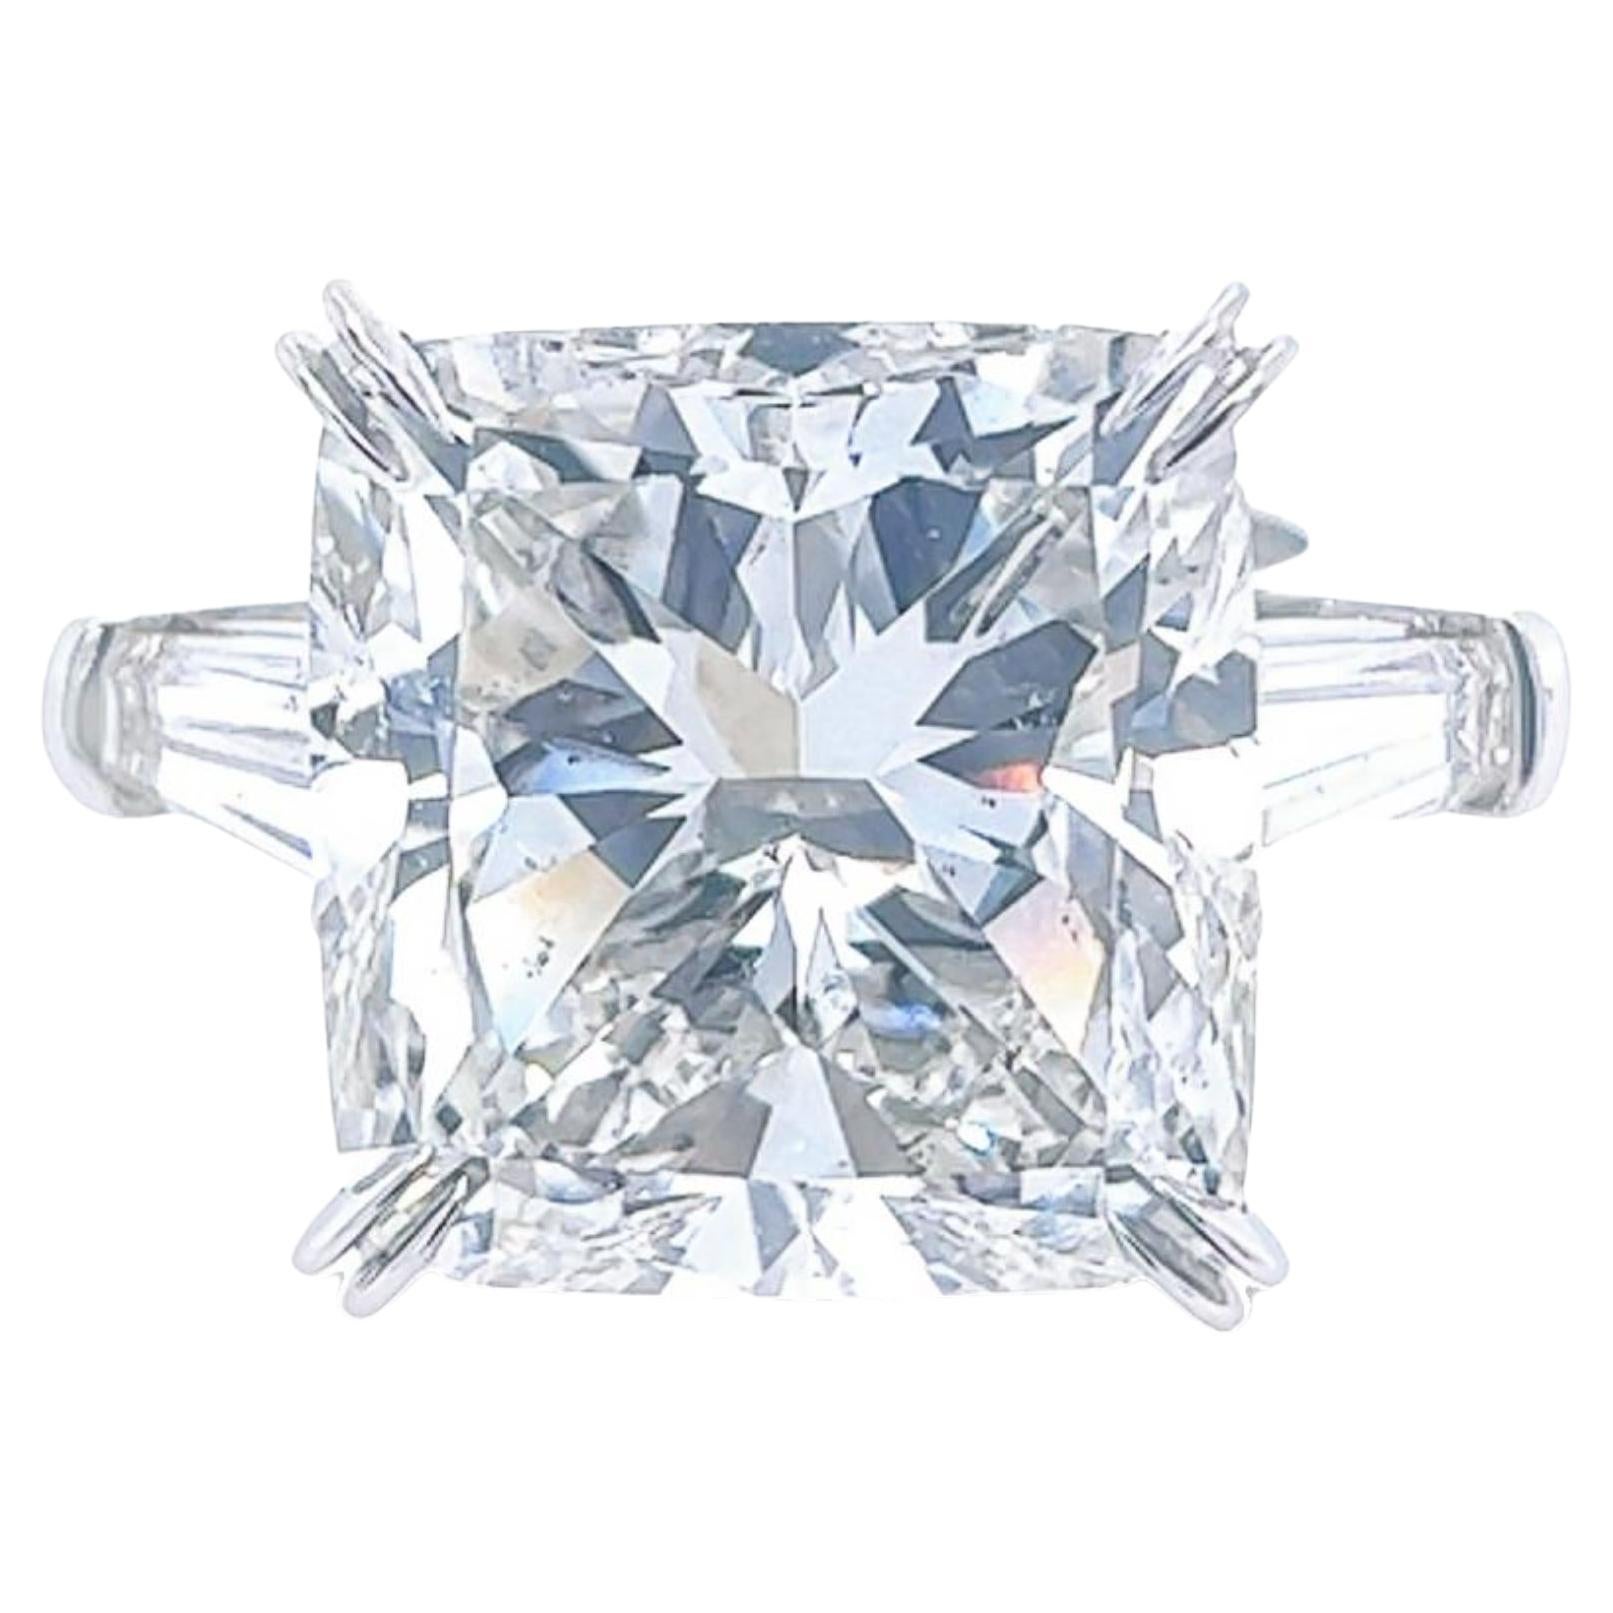 David Rosenberg Verlobungsring mit 15,71 Karat Diamanten im Kissenschliff, GIA 3 Stein